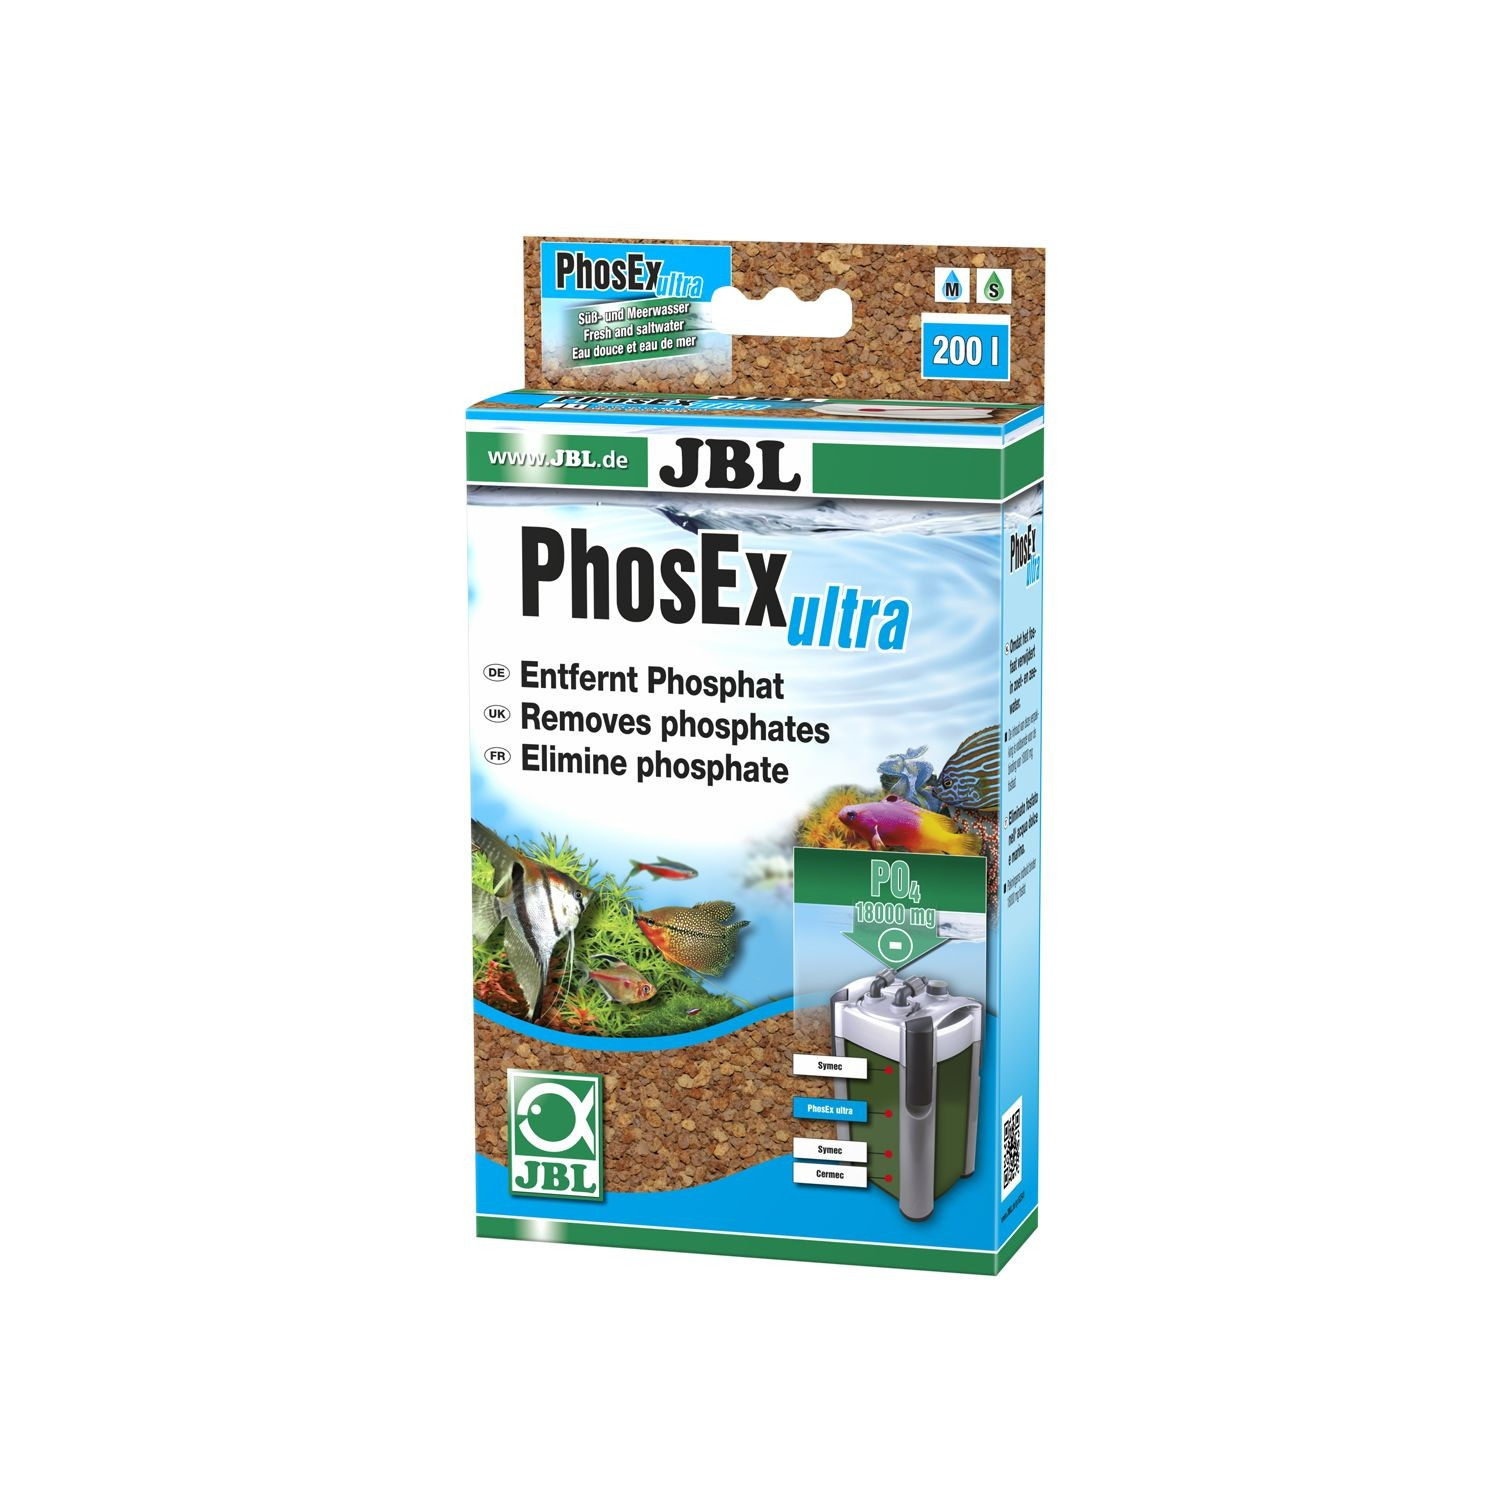 PhosEx ultra - Filtermasse zur Phosphat-Entfernung